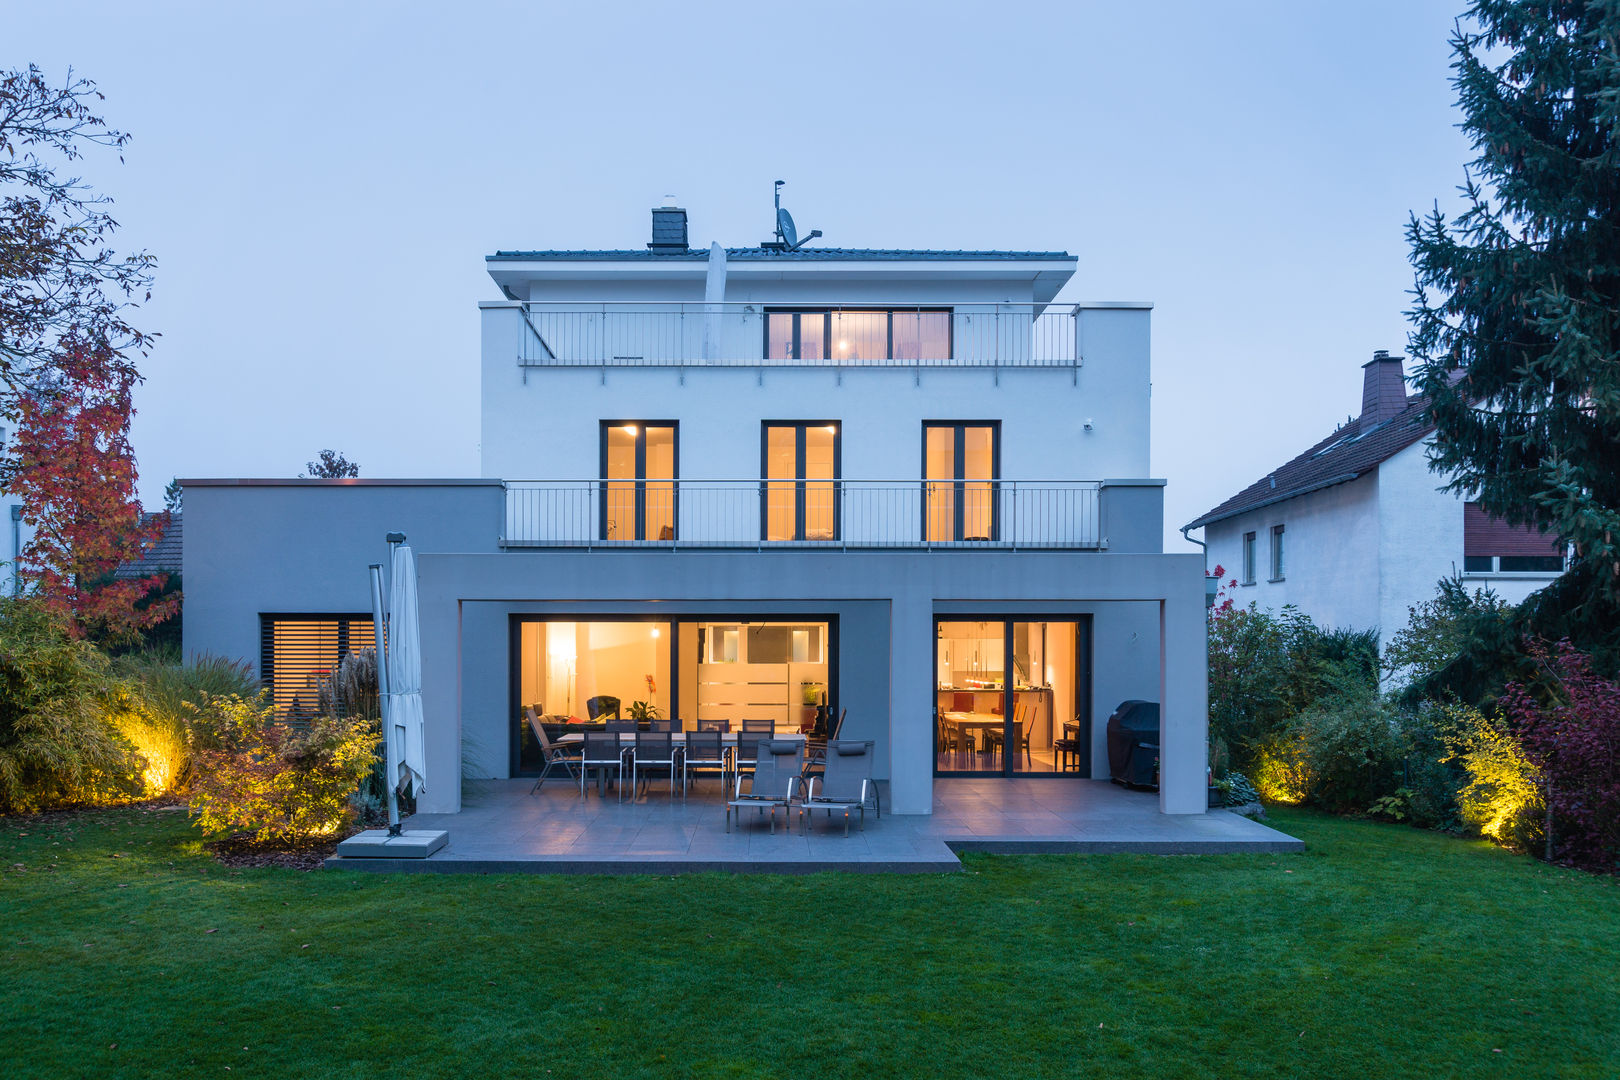 Smart Home in Frankfurt, casaio | smart buildings casaio | smart buildings Casas de estilo moderno